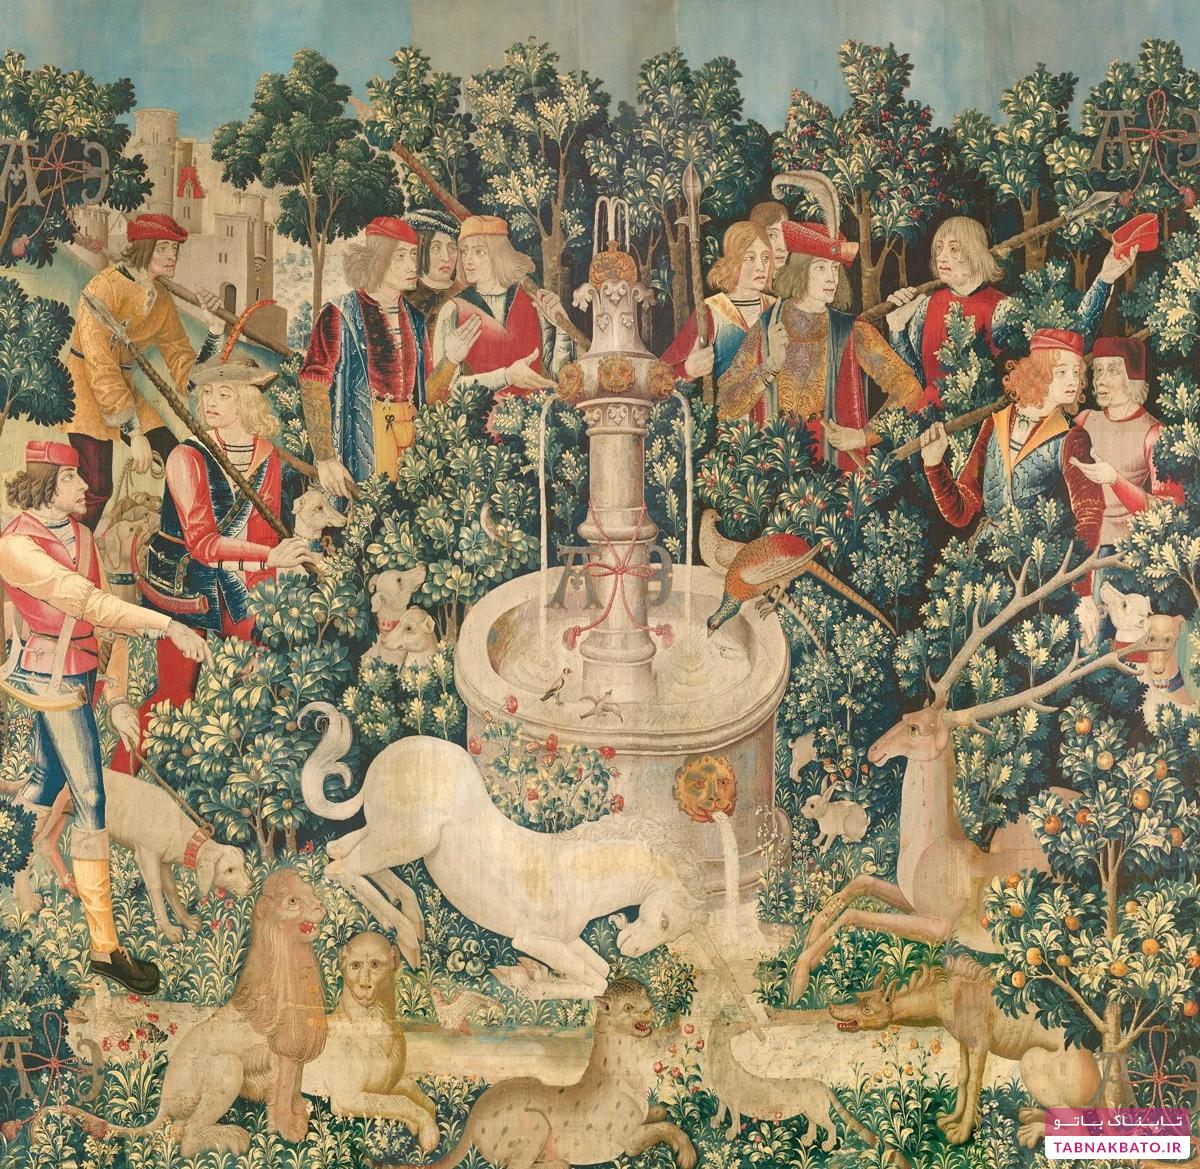 حیوانات در تابلوهای نقاشی قرون وسطا چه مفهومی داشتند؟